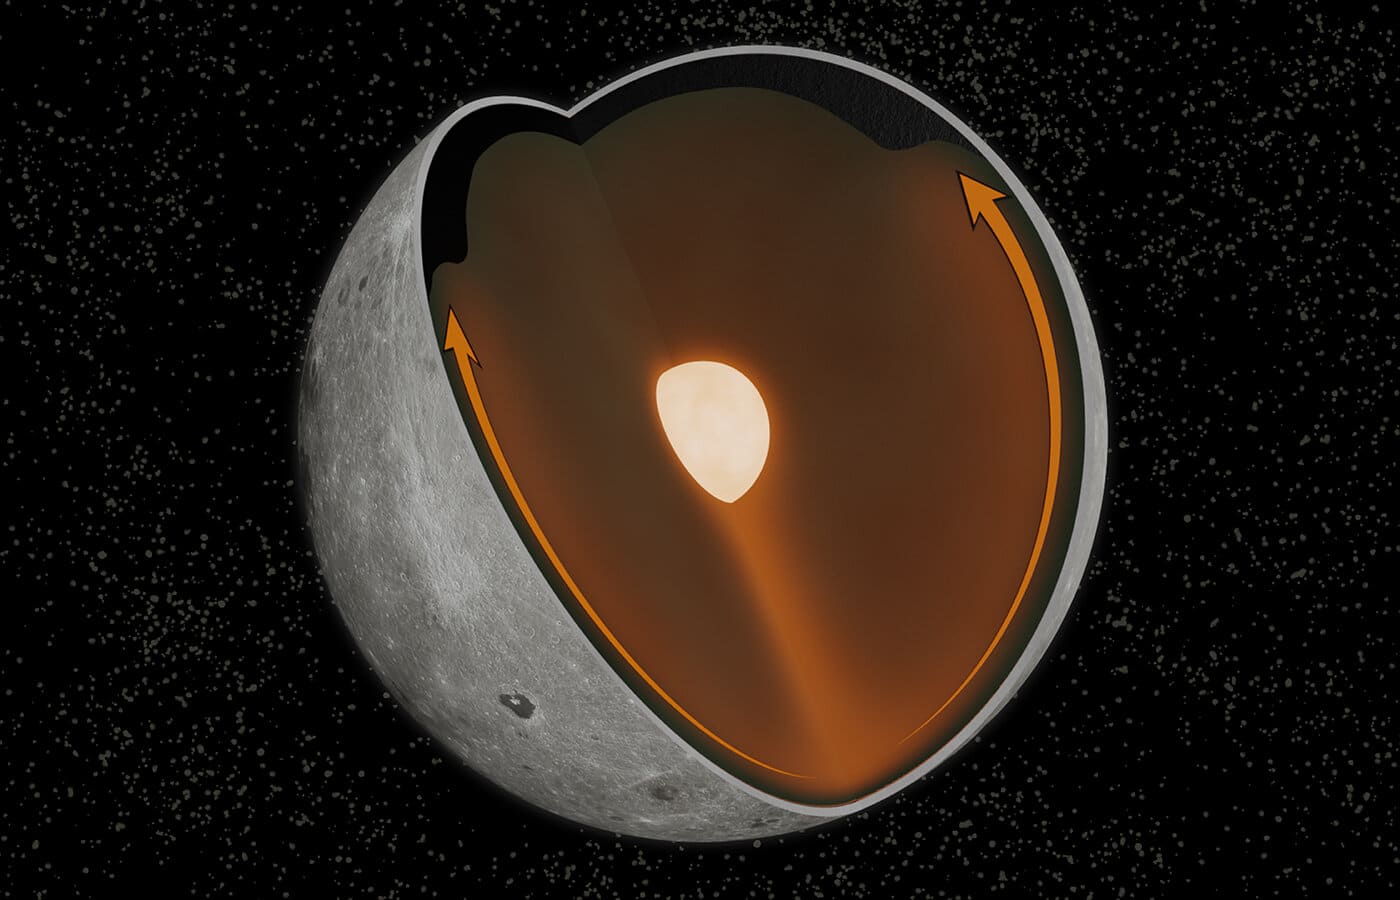 Схема миграции KREEP-пород на Луне под действием мантийного плюма